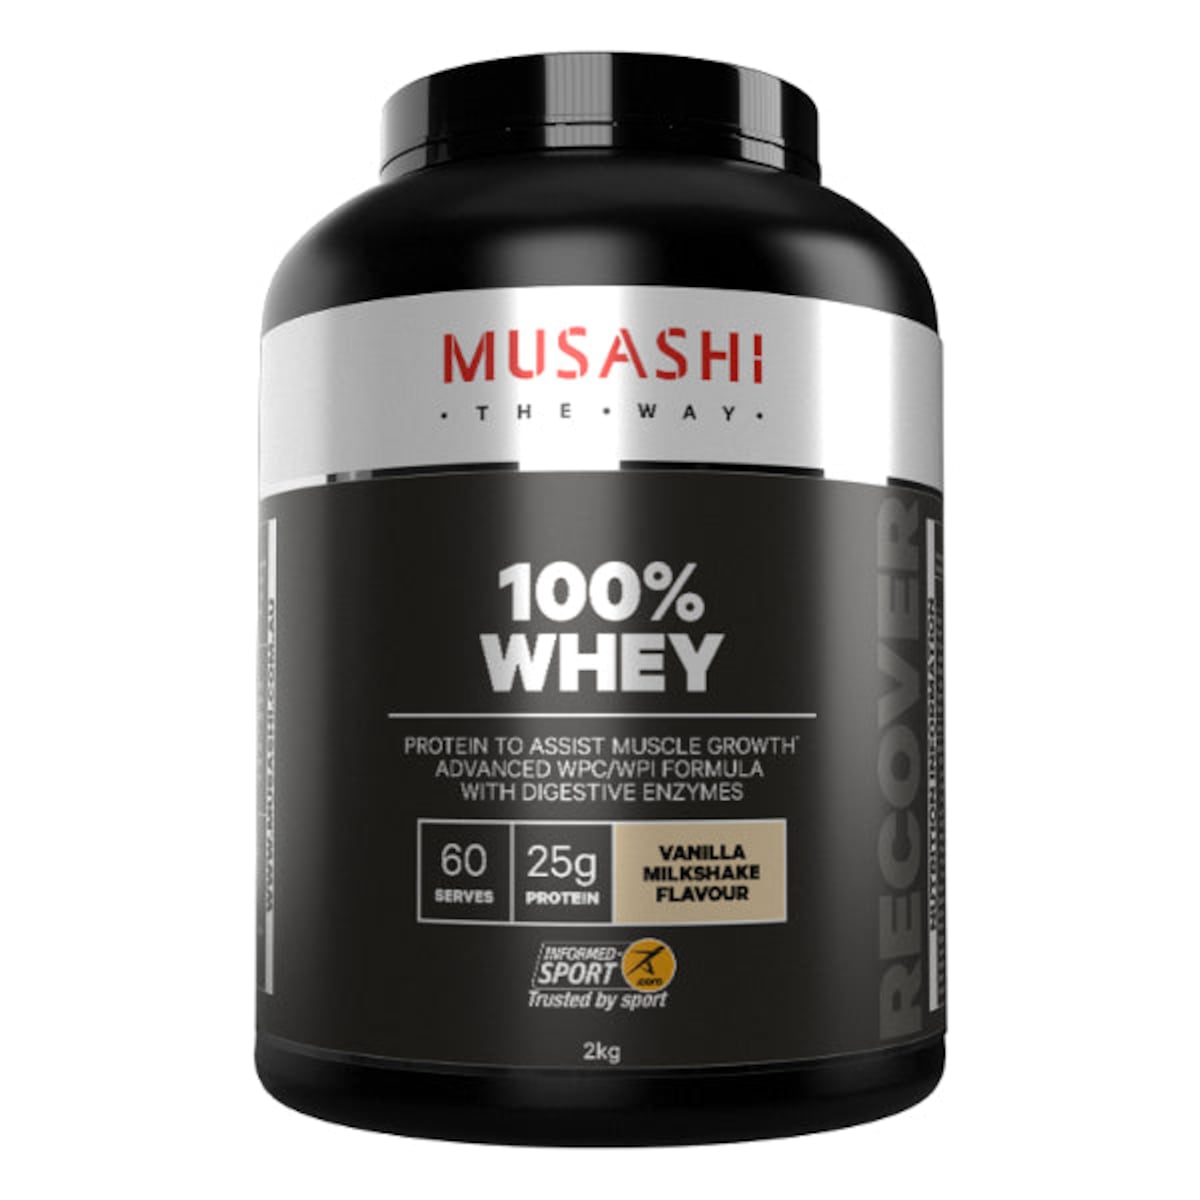 Musashi 100% Whey Protein Powder Vanilla Milkshake 2kg Australia